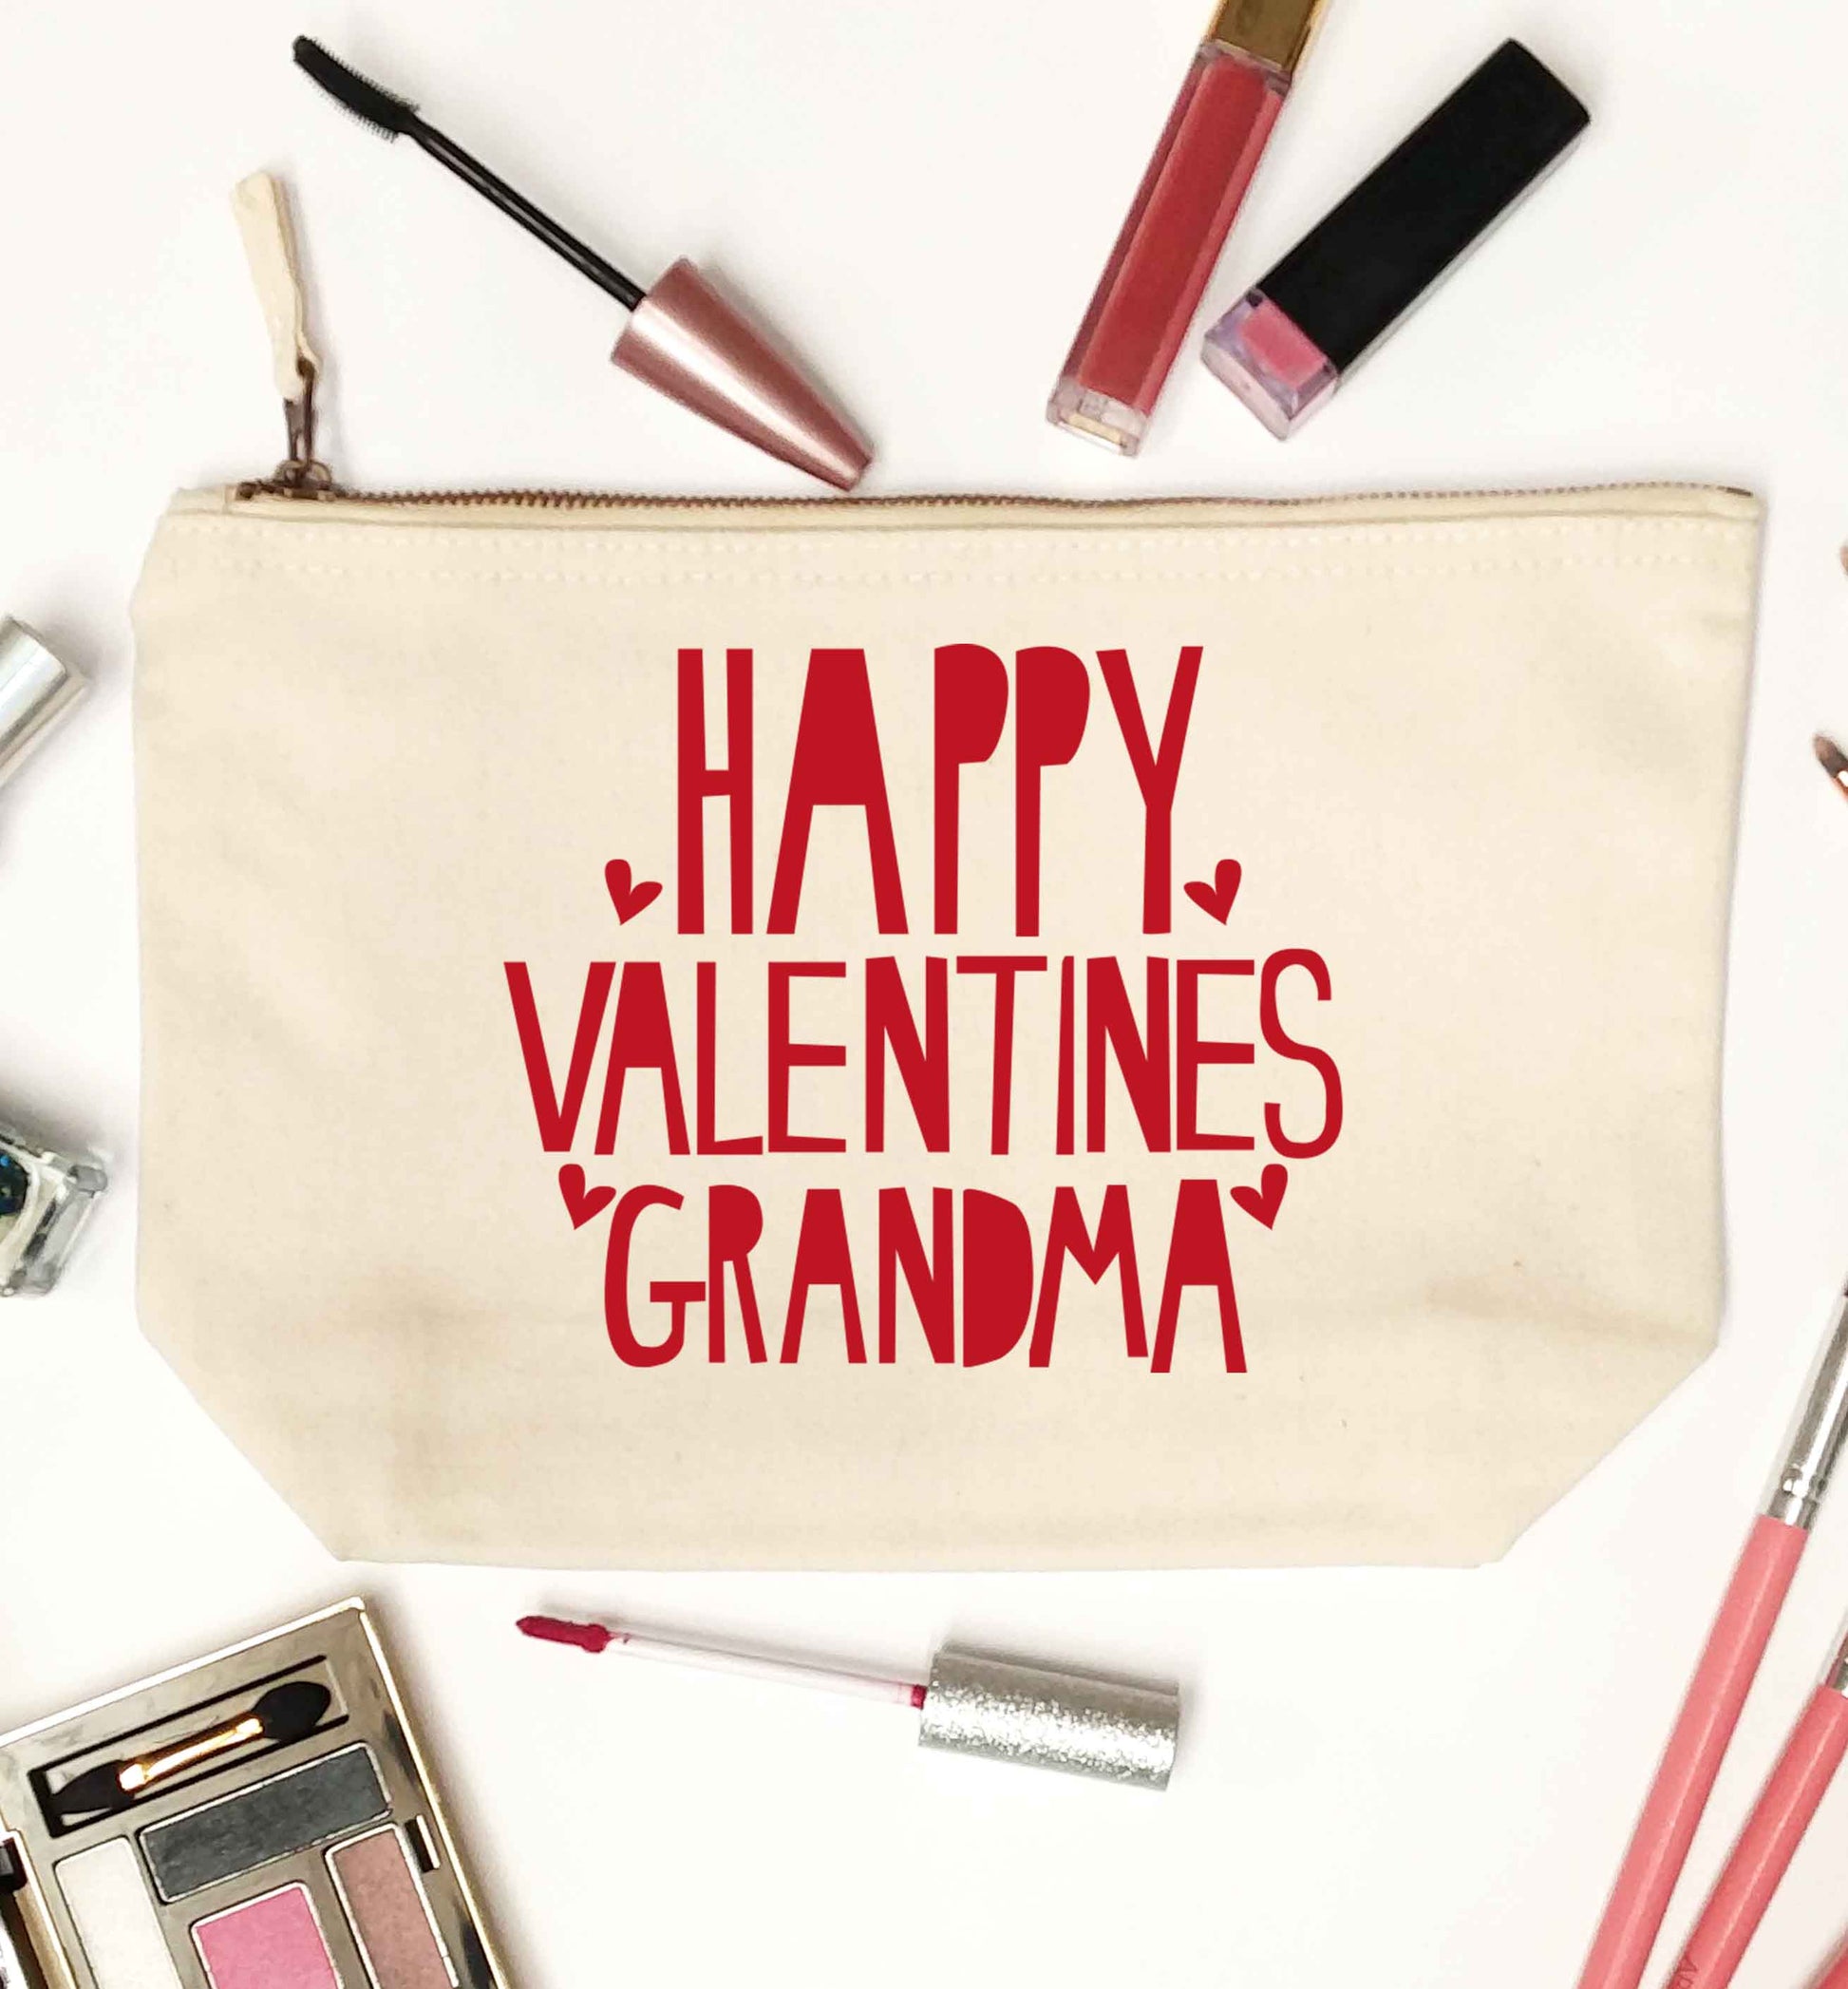 Happy valentines grandma natural makeup bag